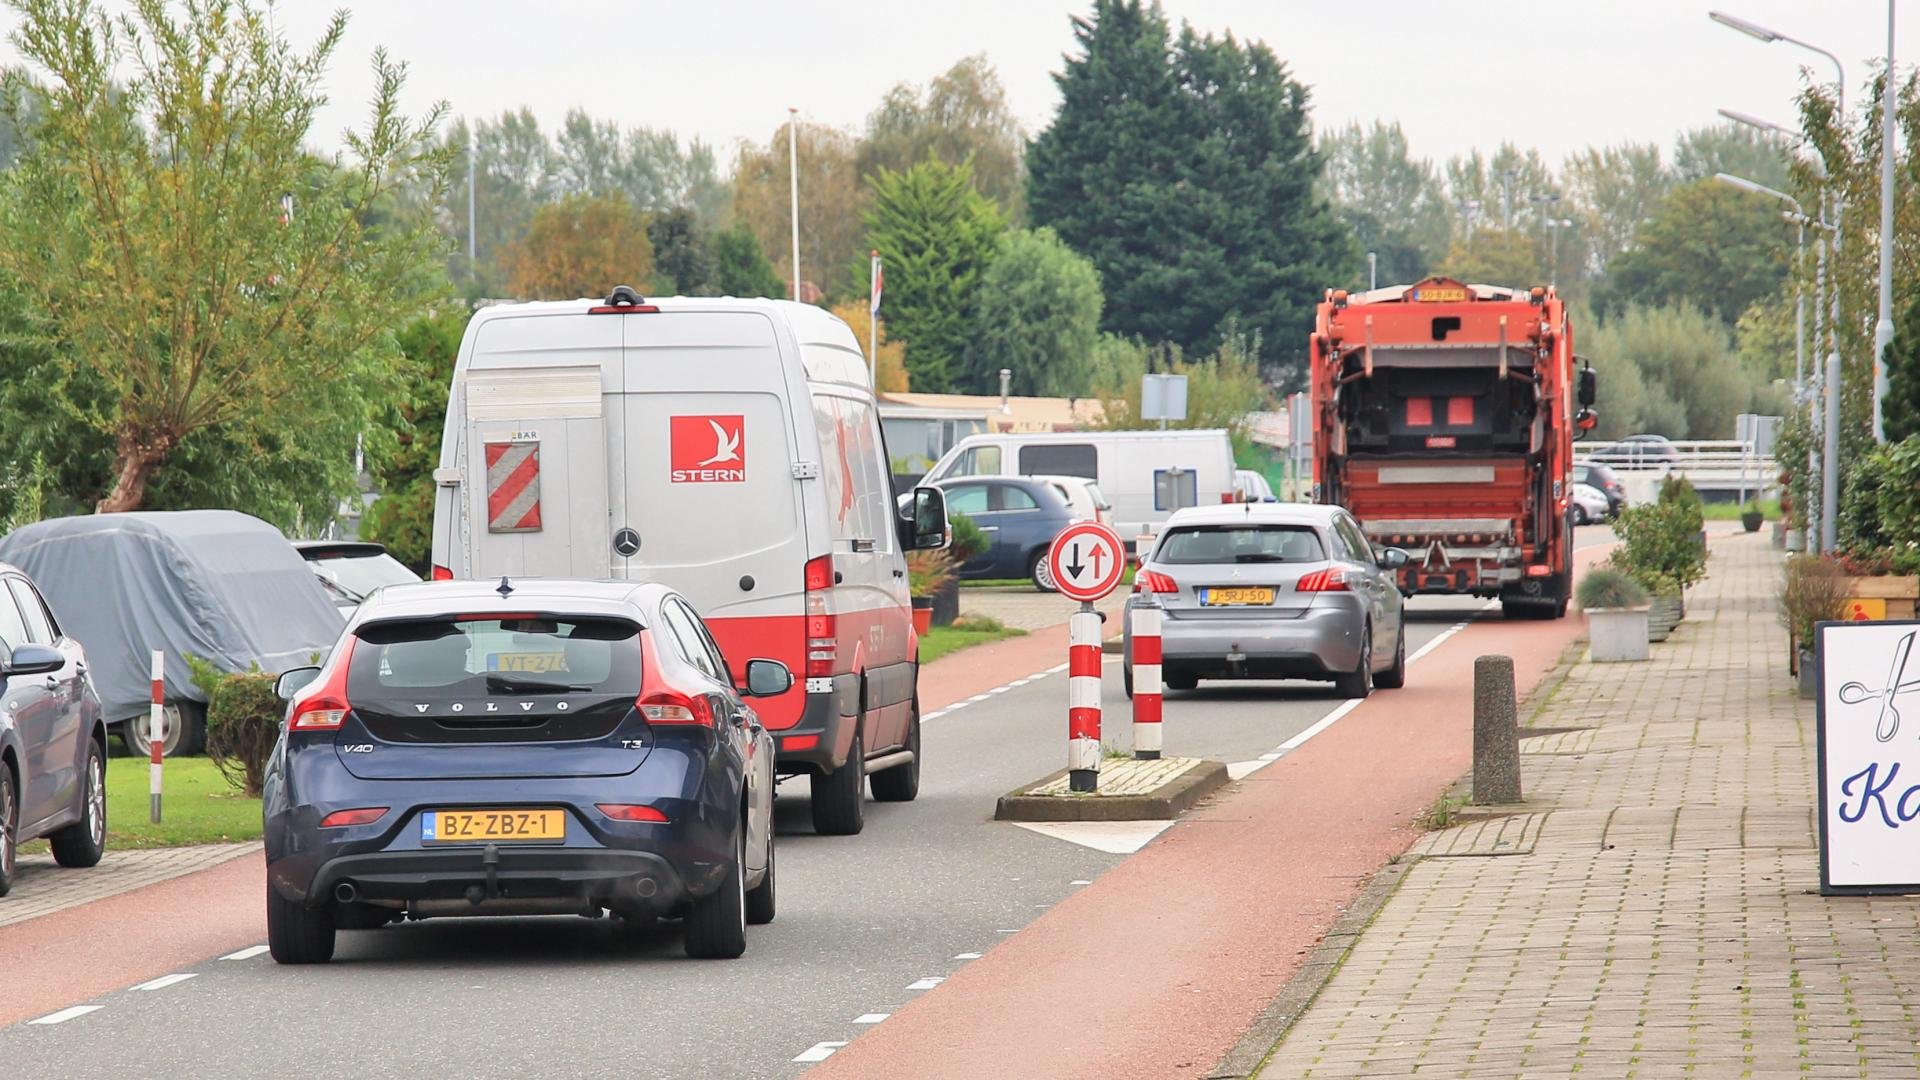 oor de verkeersveiligheid op de Akerdijk en Nieuwemeerdijk zullen de chicanes, wegversmallingen, voorlopig blijven staan en zal de maximumsnelheid 30 km/uur blijven.